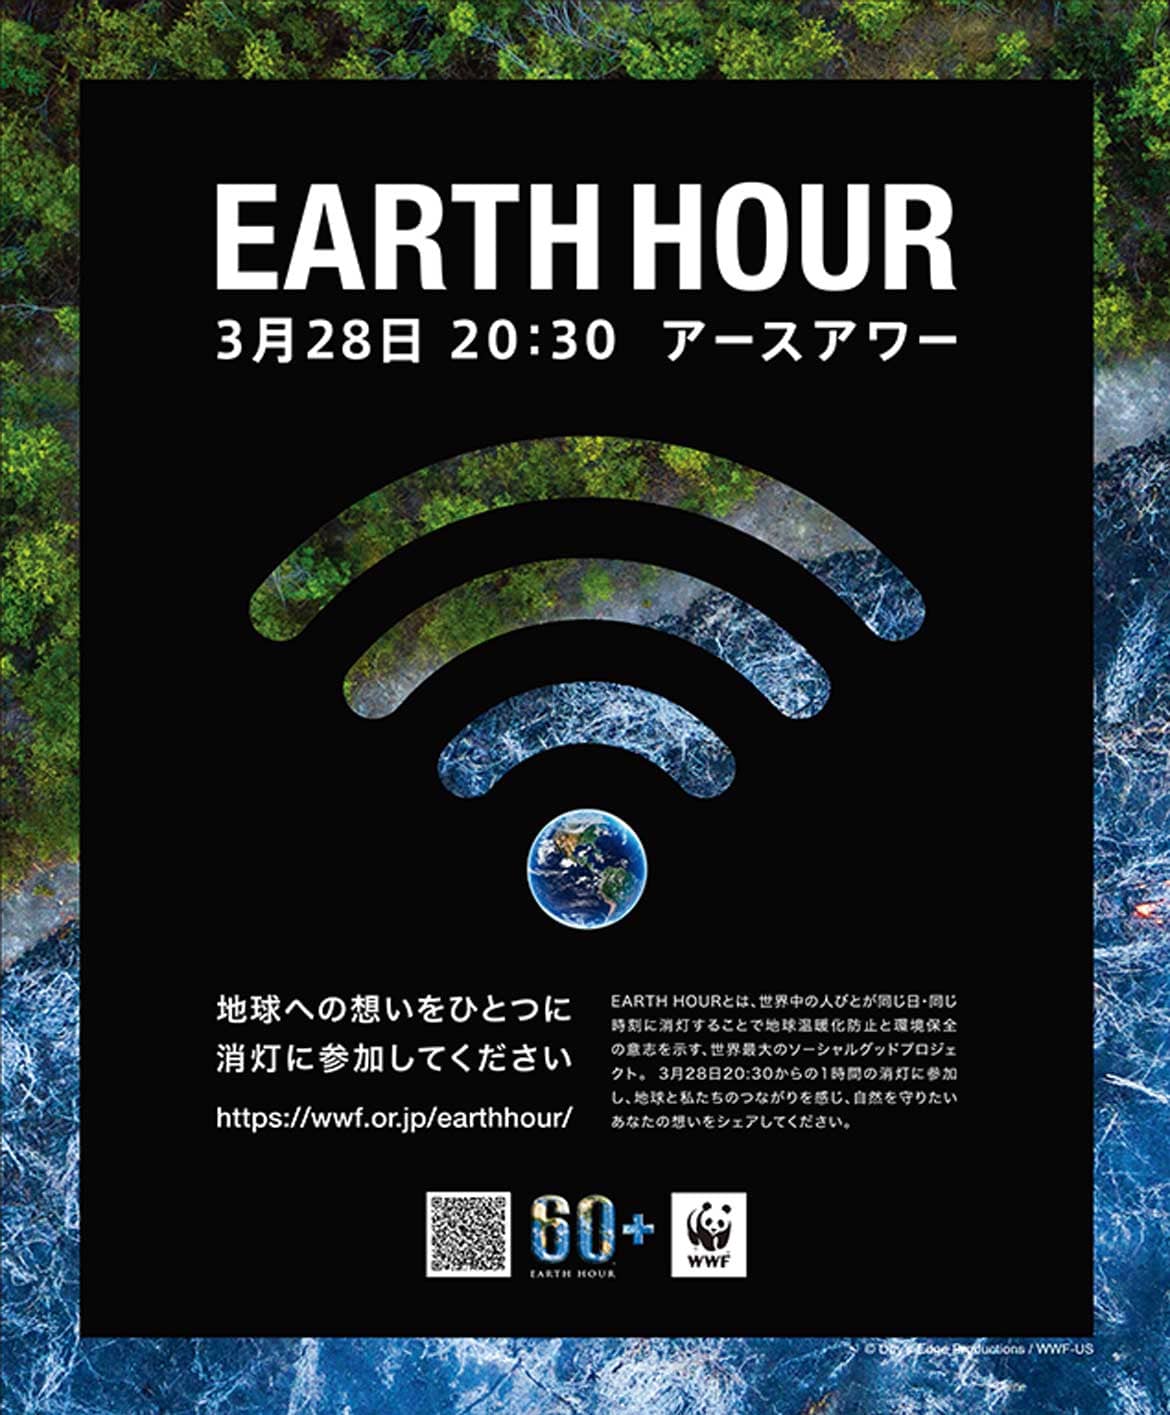 世界188の国と地域が参加する世界最大級の環境アクション「EARTH HOUR 2020」3/28(土)開催